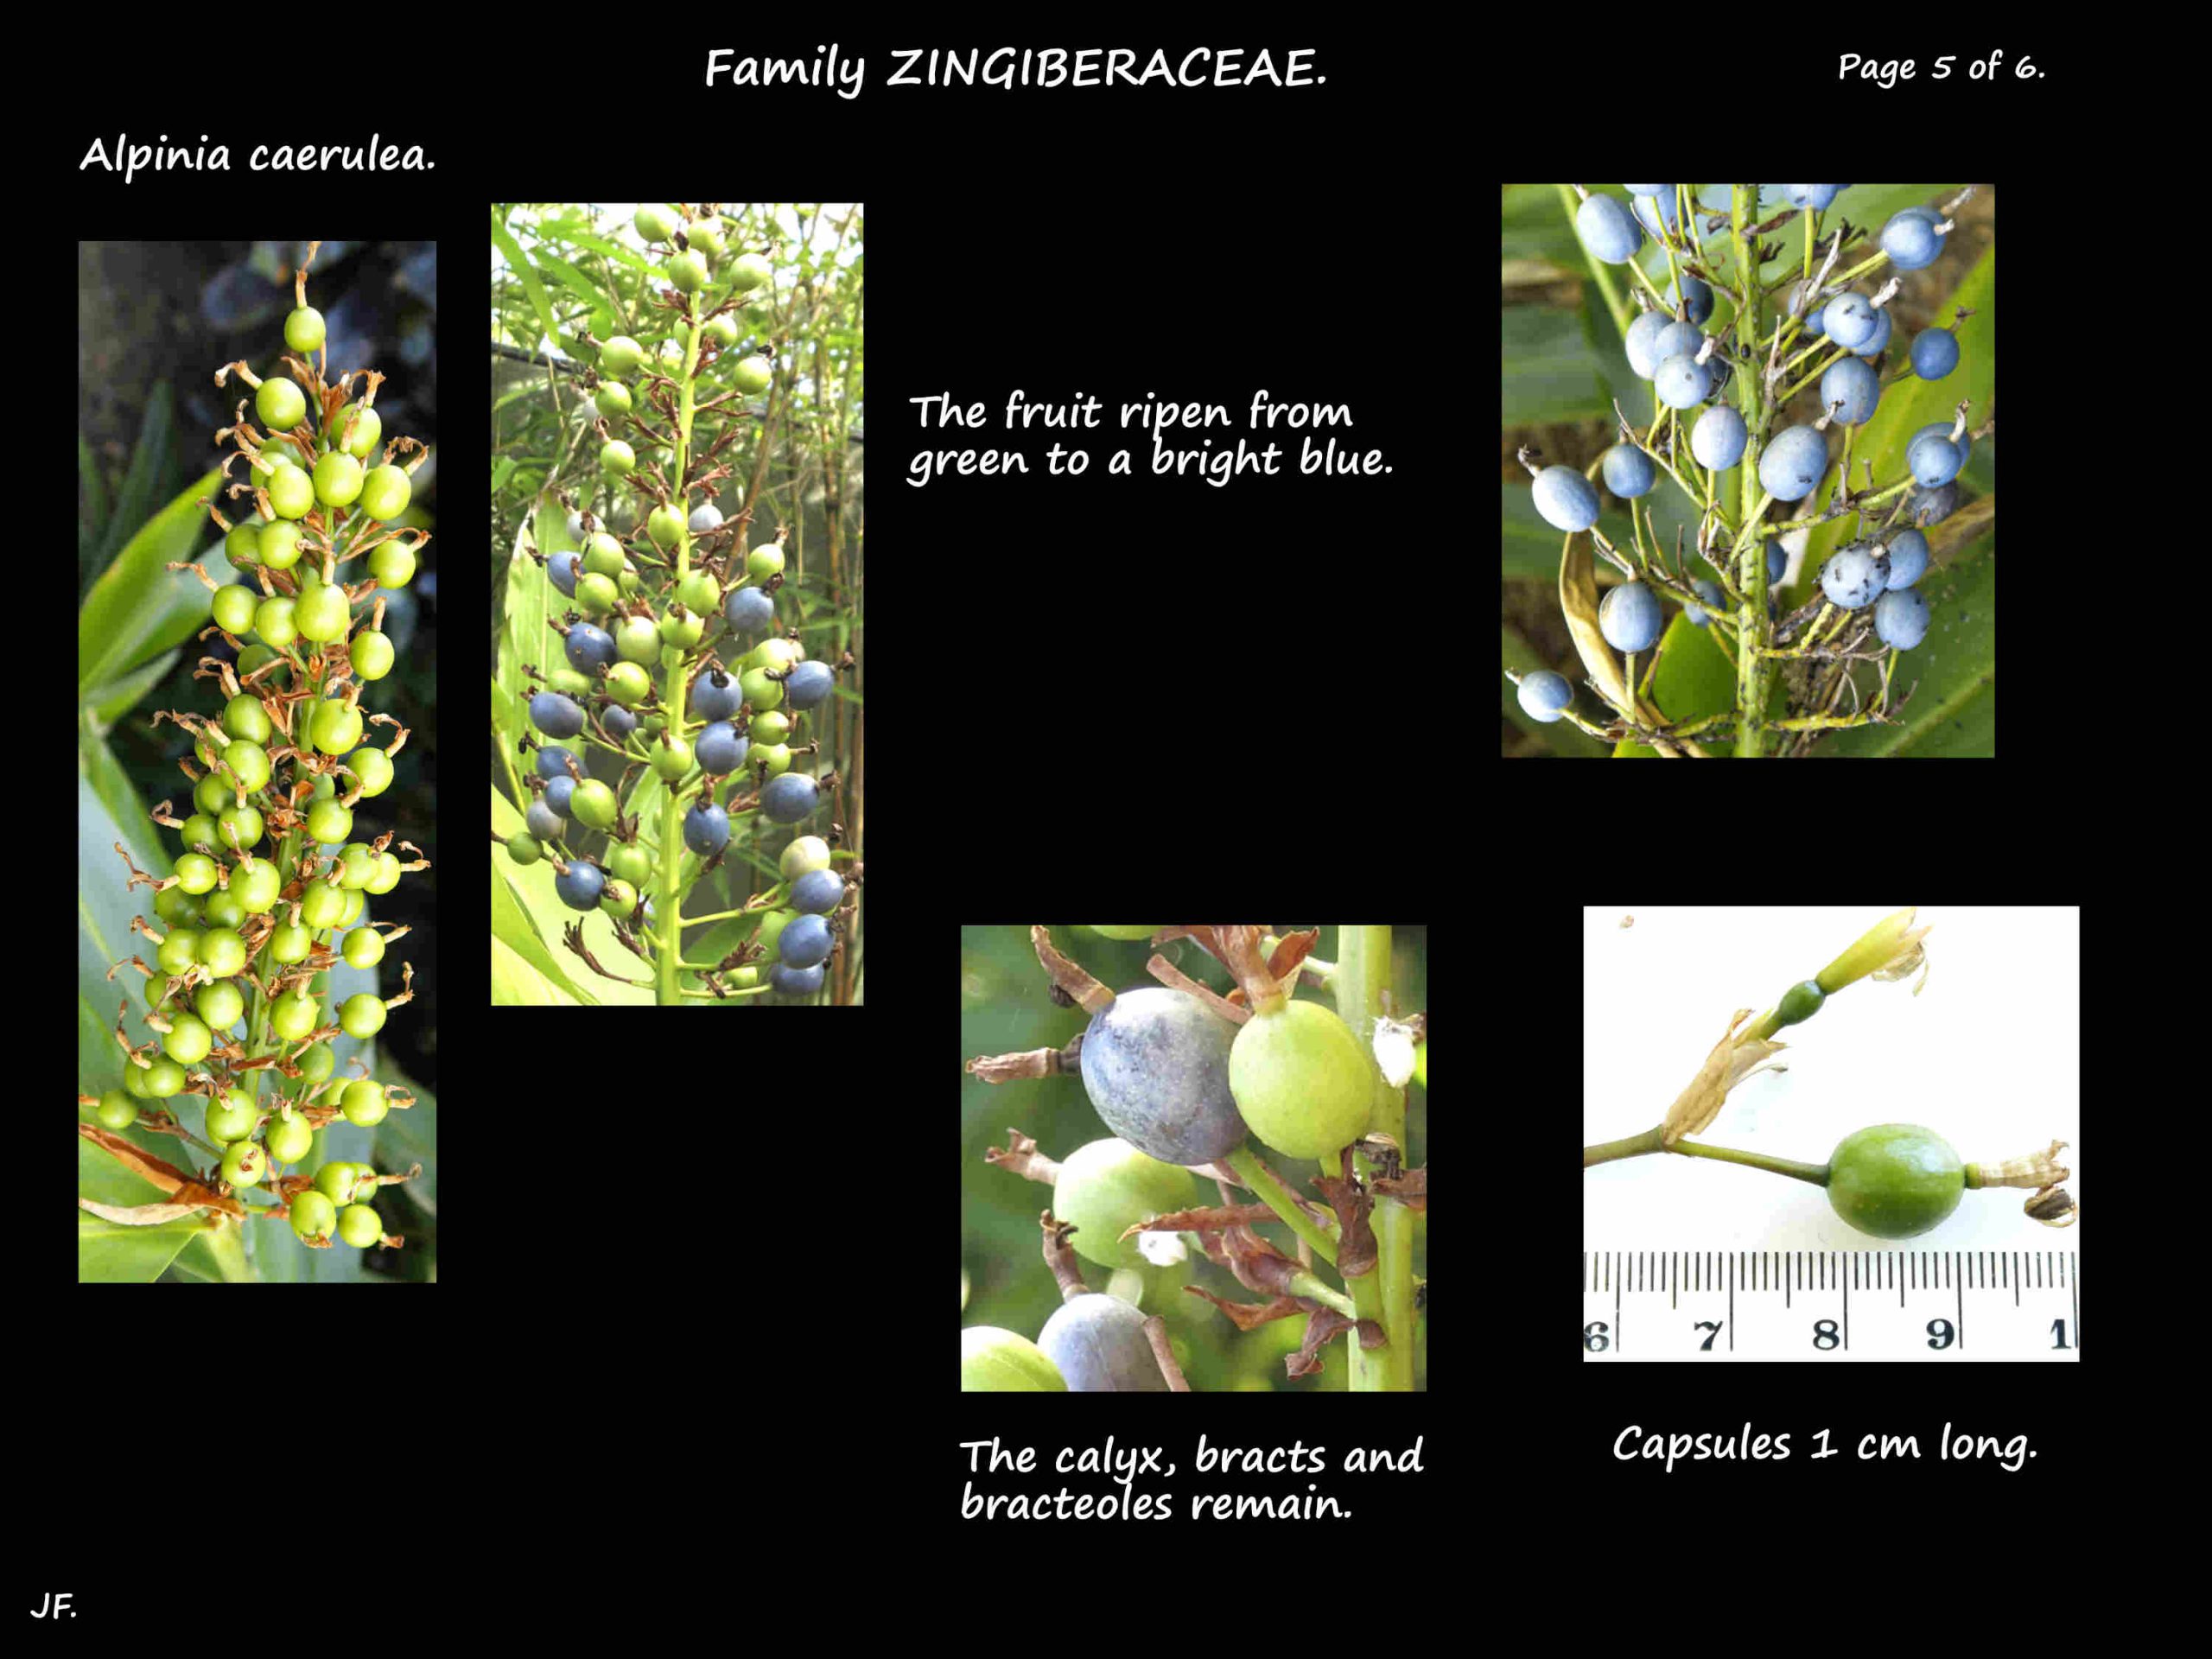 5 Alpinia caerulea capsules